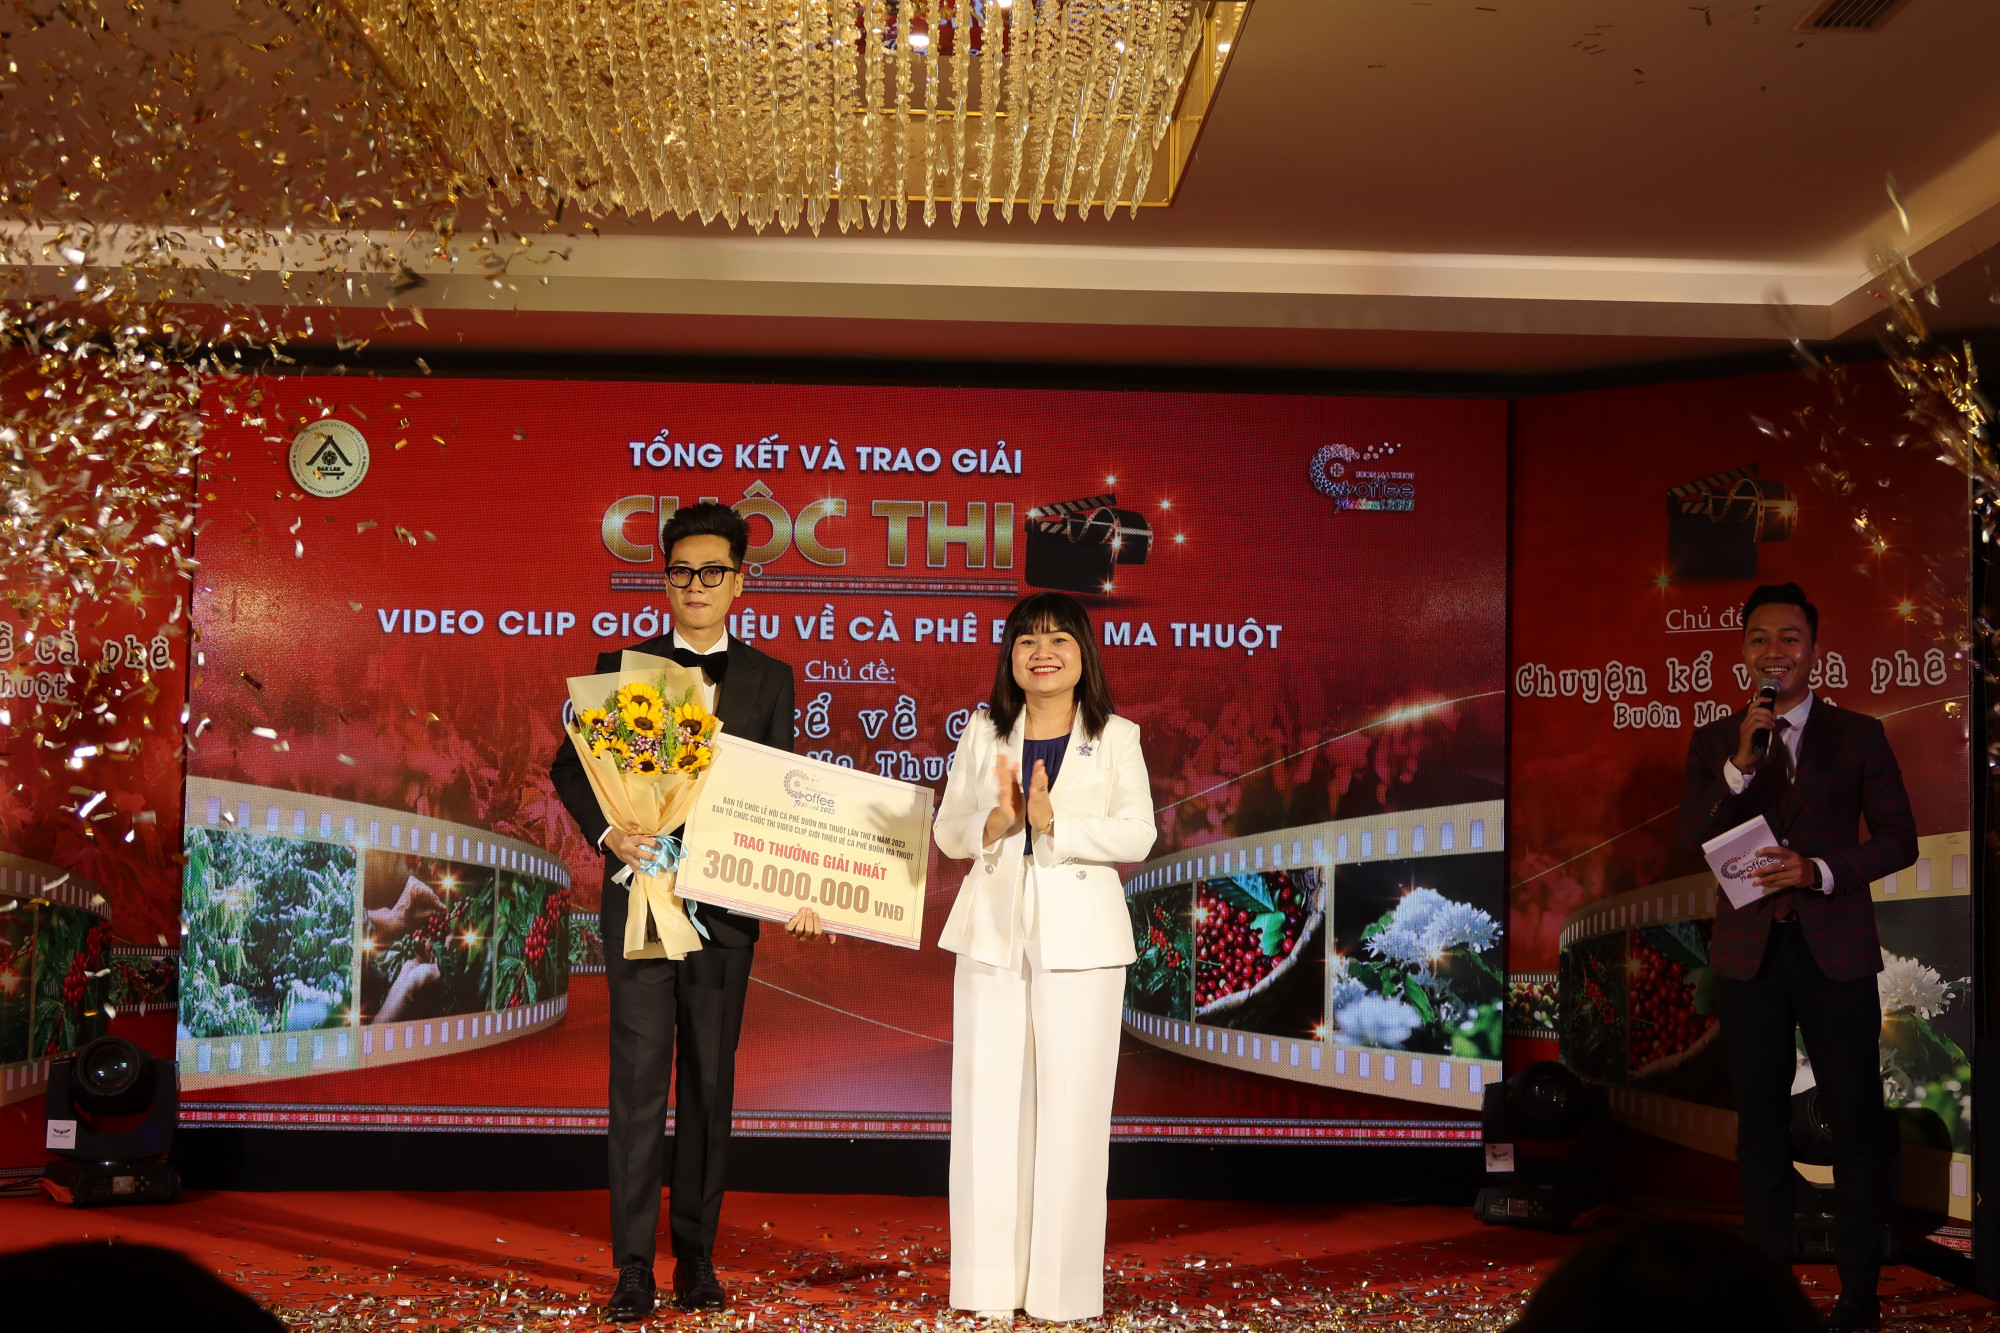 Tác giả Trần Anh Đạt đoạt giải nhất Cuộc thi video clip giới thiệu về Cà phê Buôn Ma Thuột, tác phẩm “Quê nhà – Hometown” 